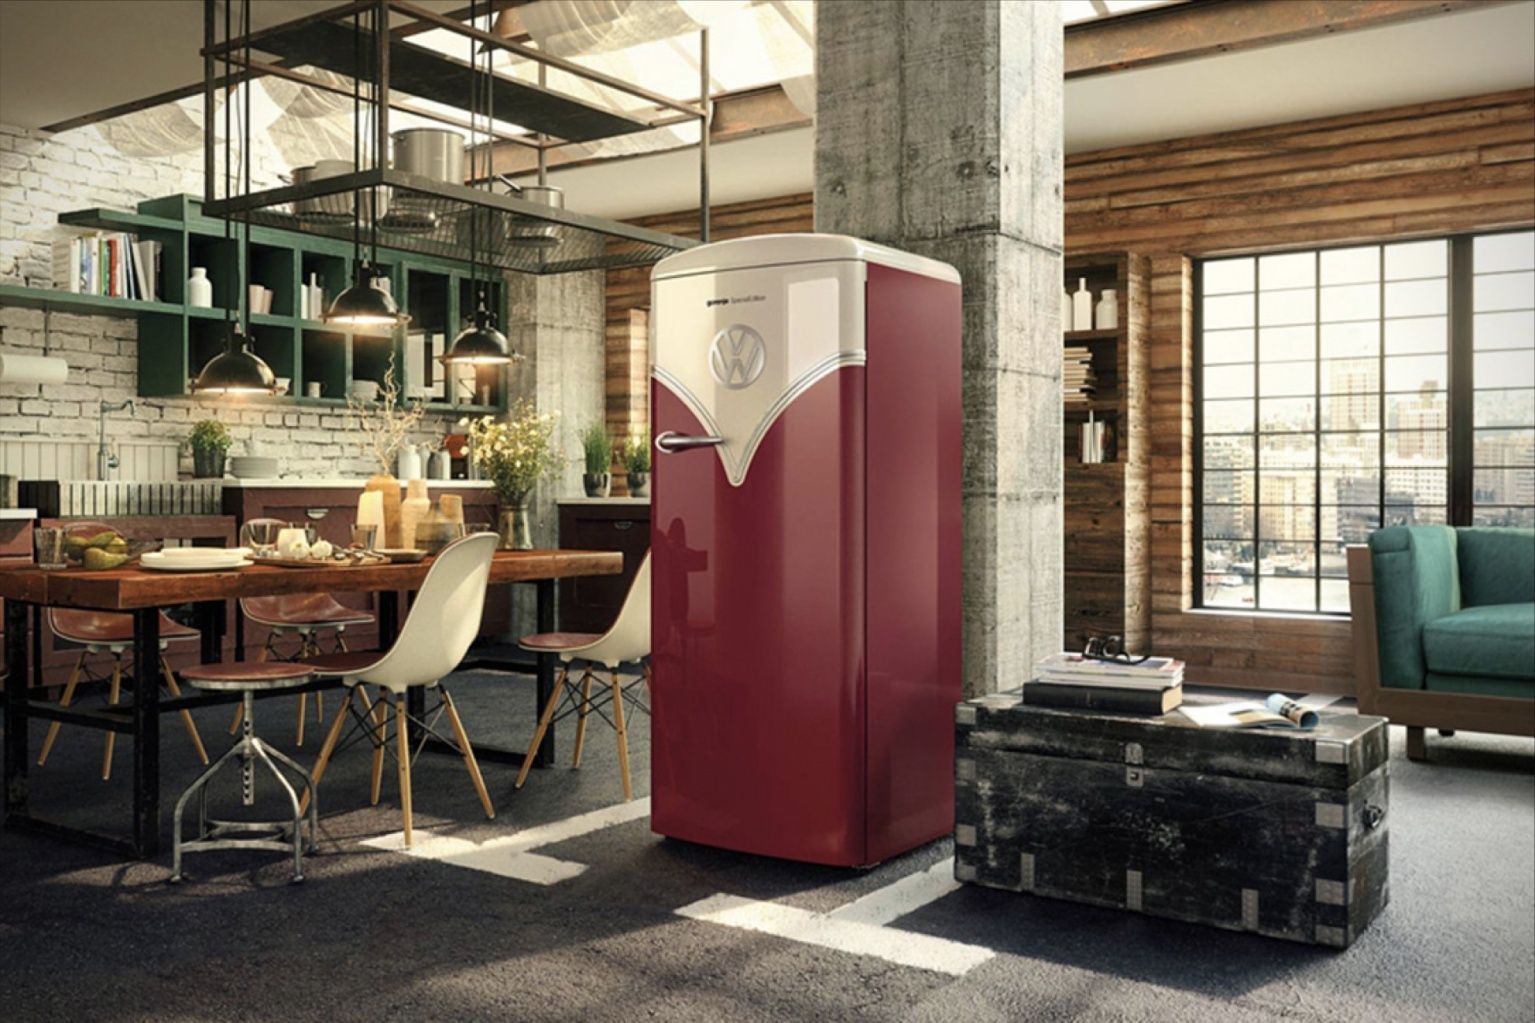 Холодильник в стиле ретро: модели от мировых производителей